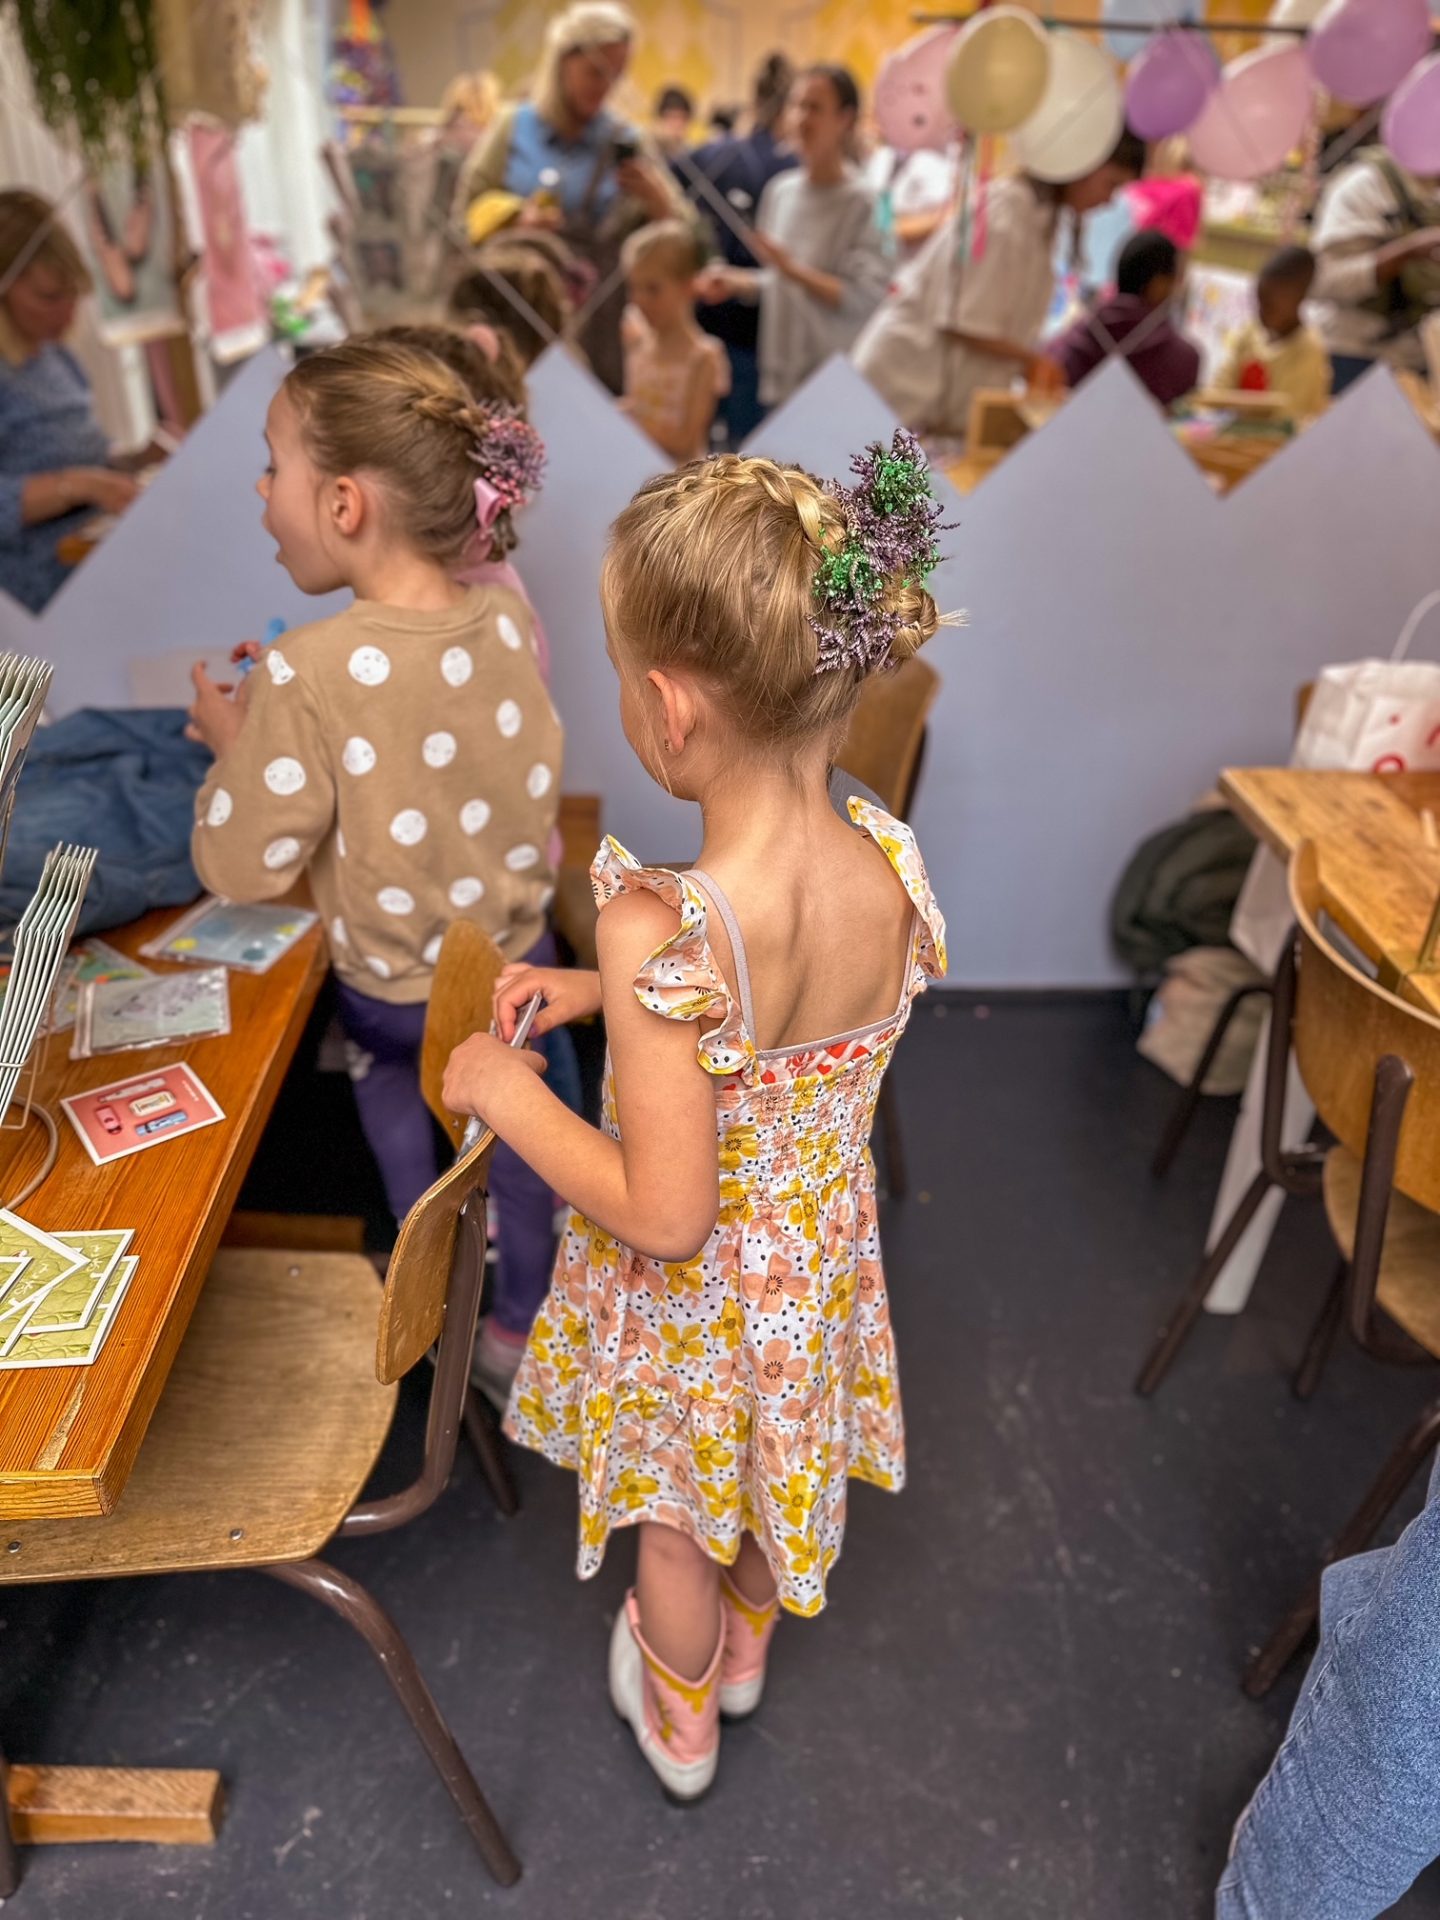 kinderfestival Amsterdam met workshops en DIY's